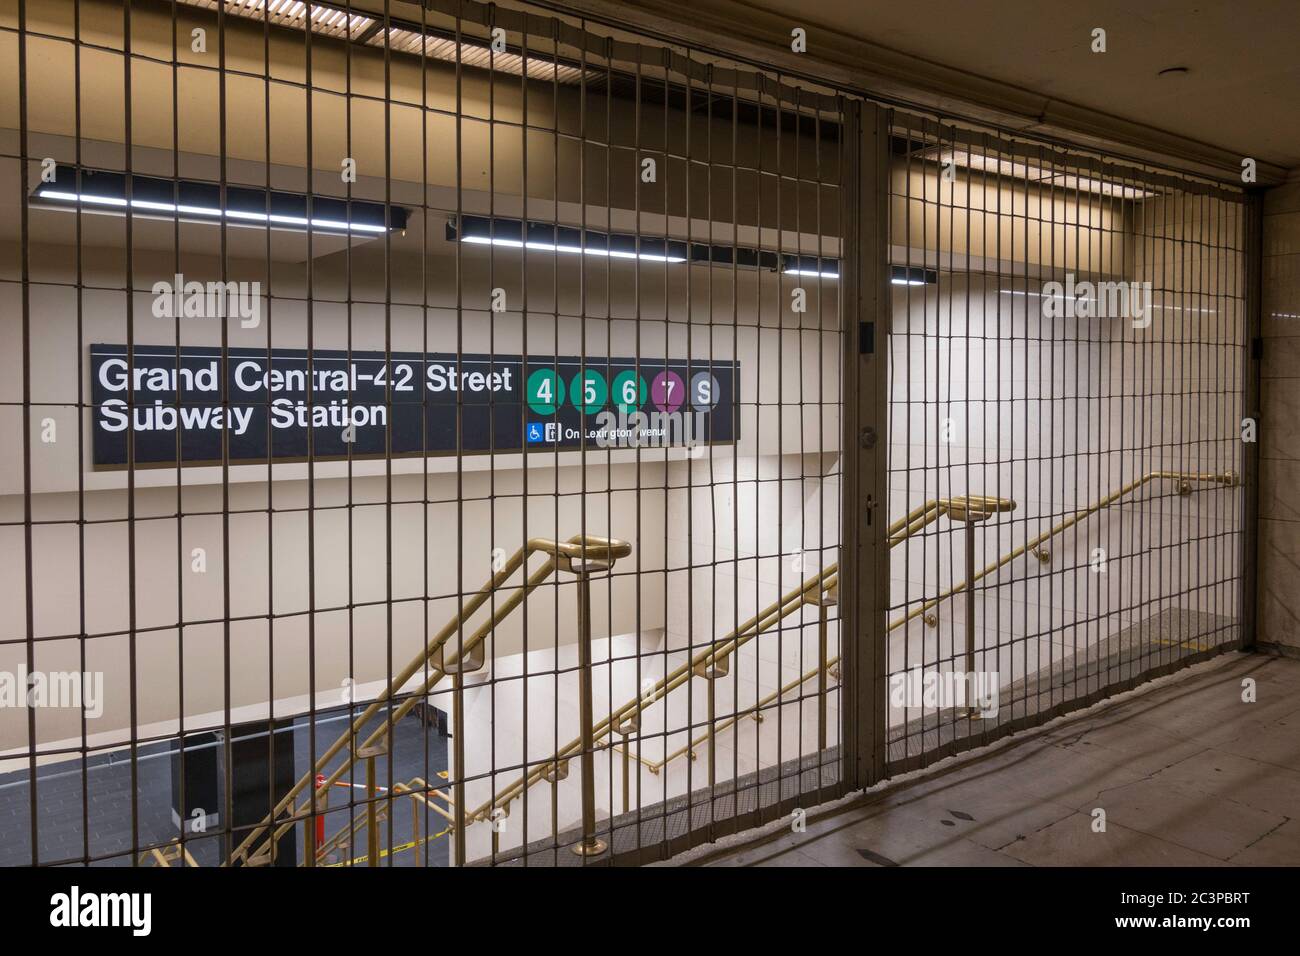 L'entrée du métro Grand Central est inaccessible en raison de la pandémie COVID-19, le 2020 juin, à New York, aux États-Unis Banque D'Images